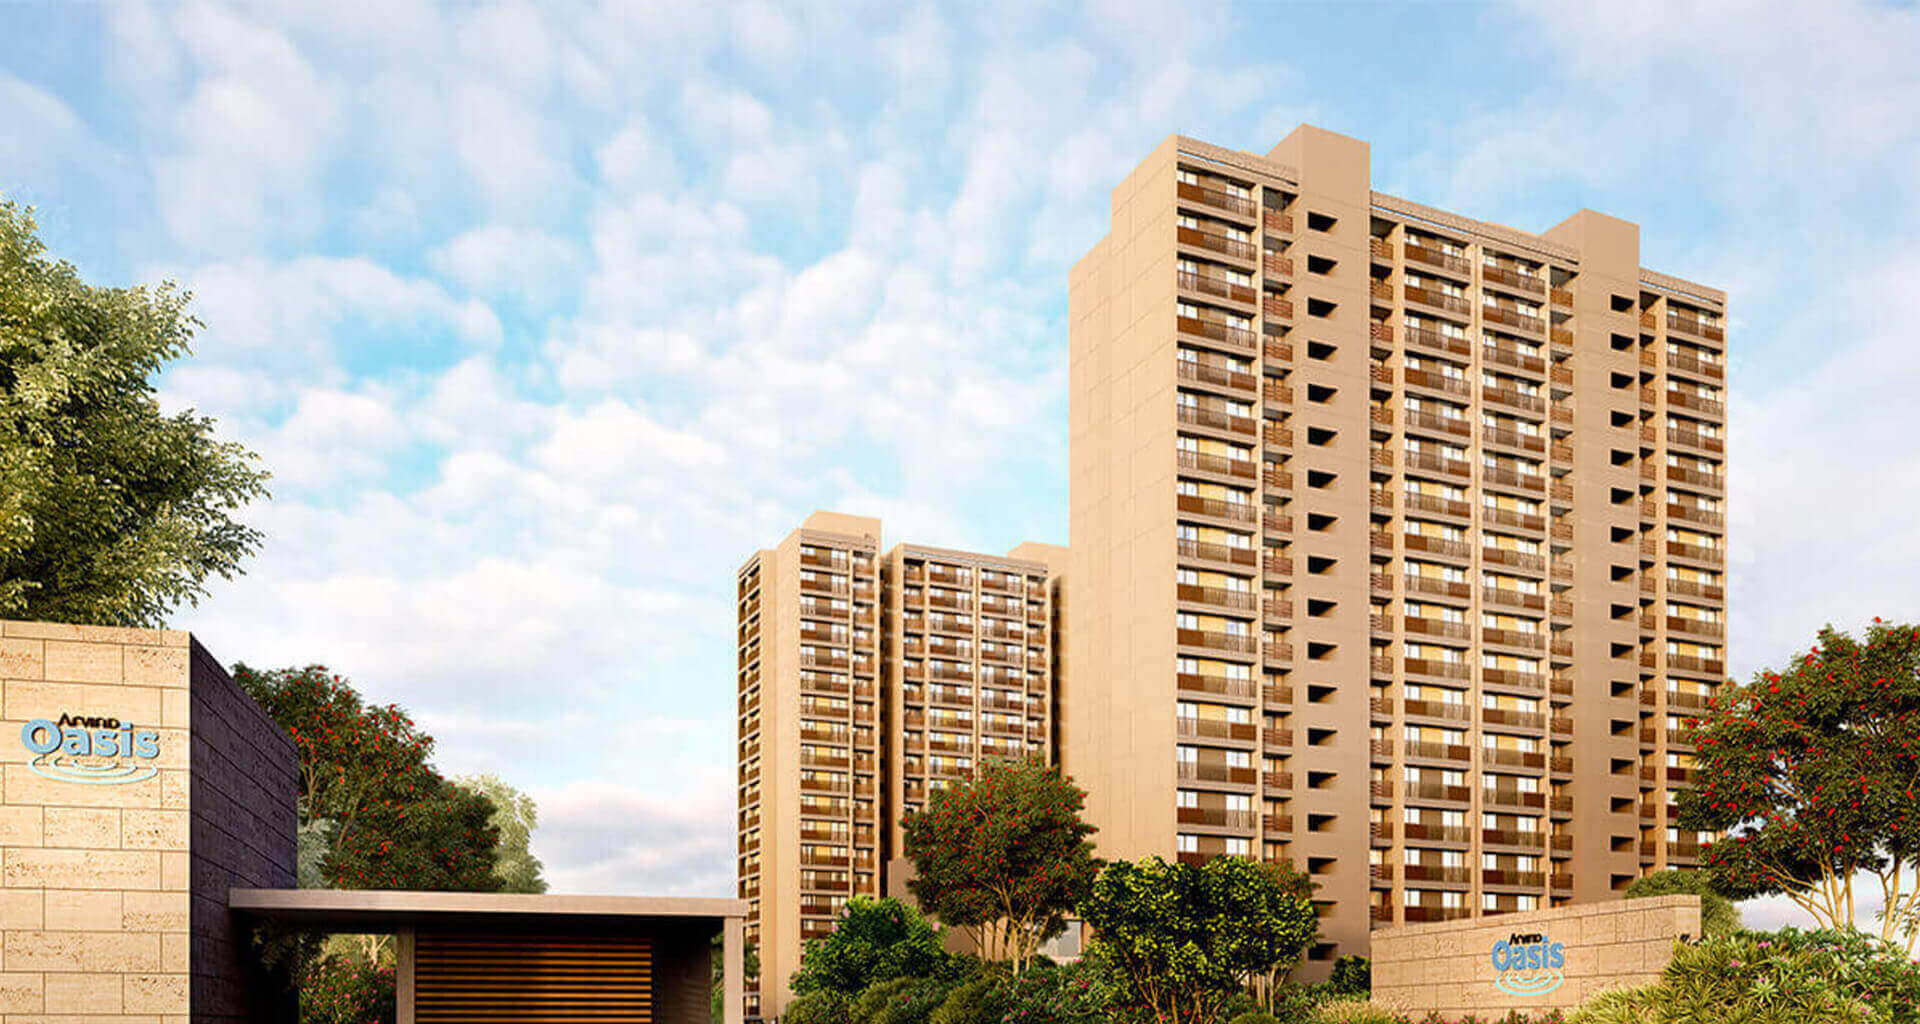 Arvind Oasis - 2 BHK Premium Apartments